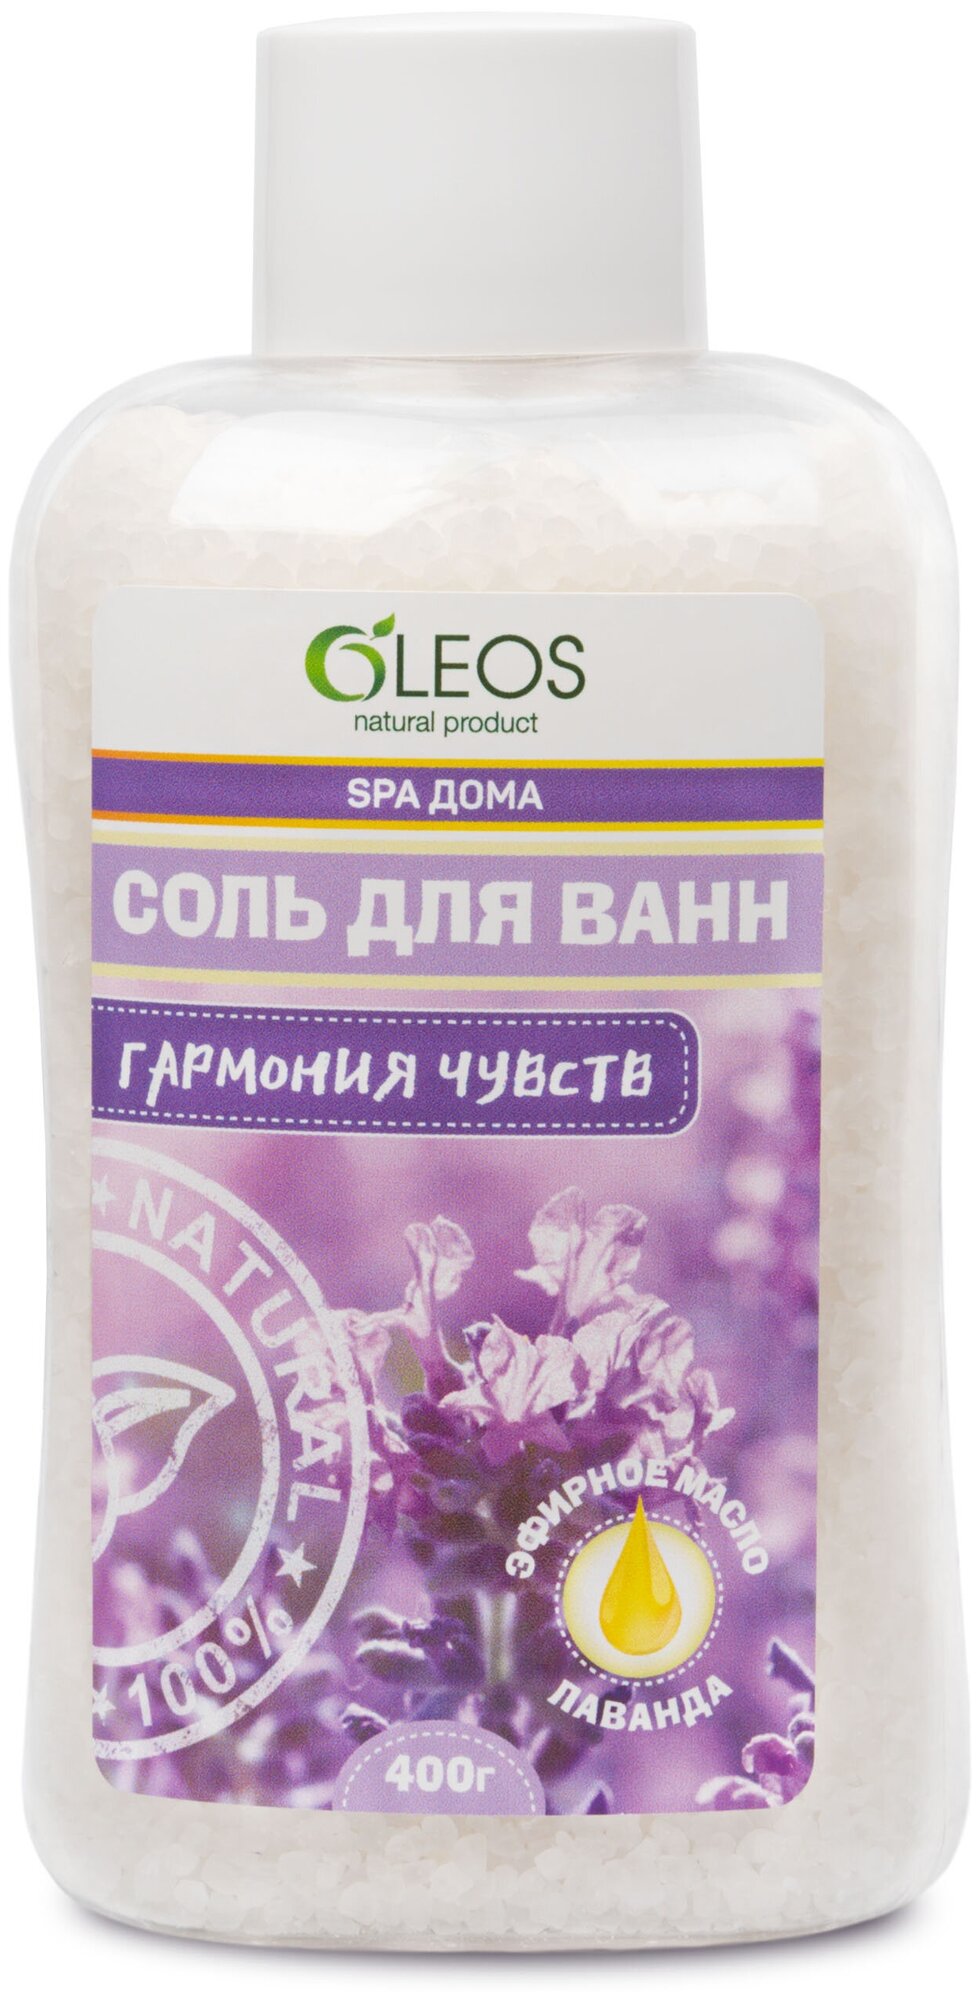 Oleos для ванн Гармония чувств 400 г (Oleos, ) - фото №1